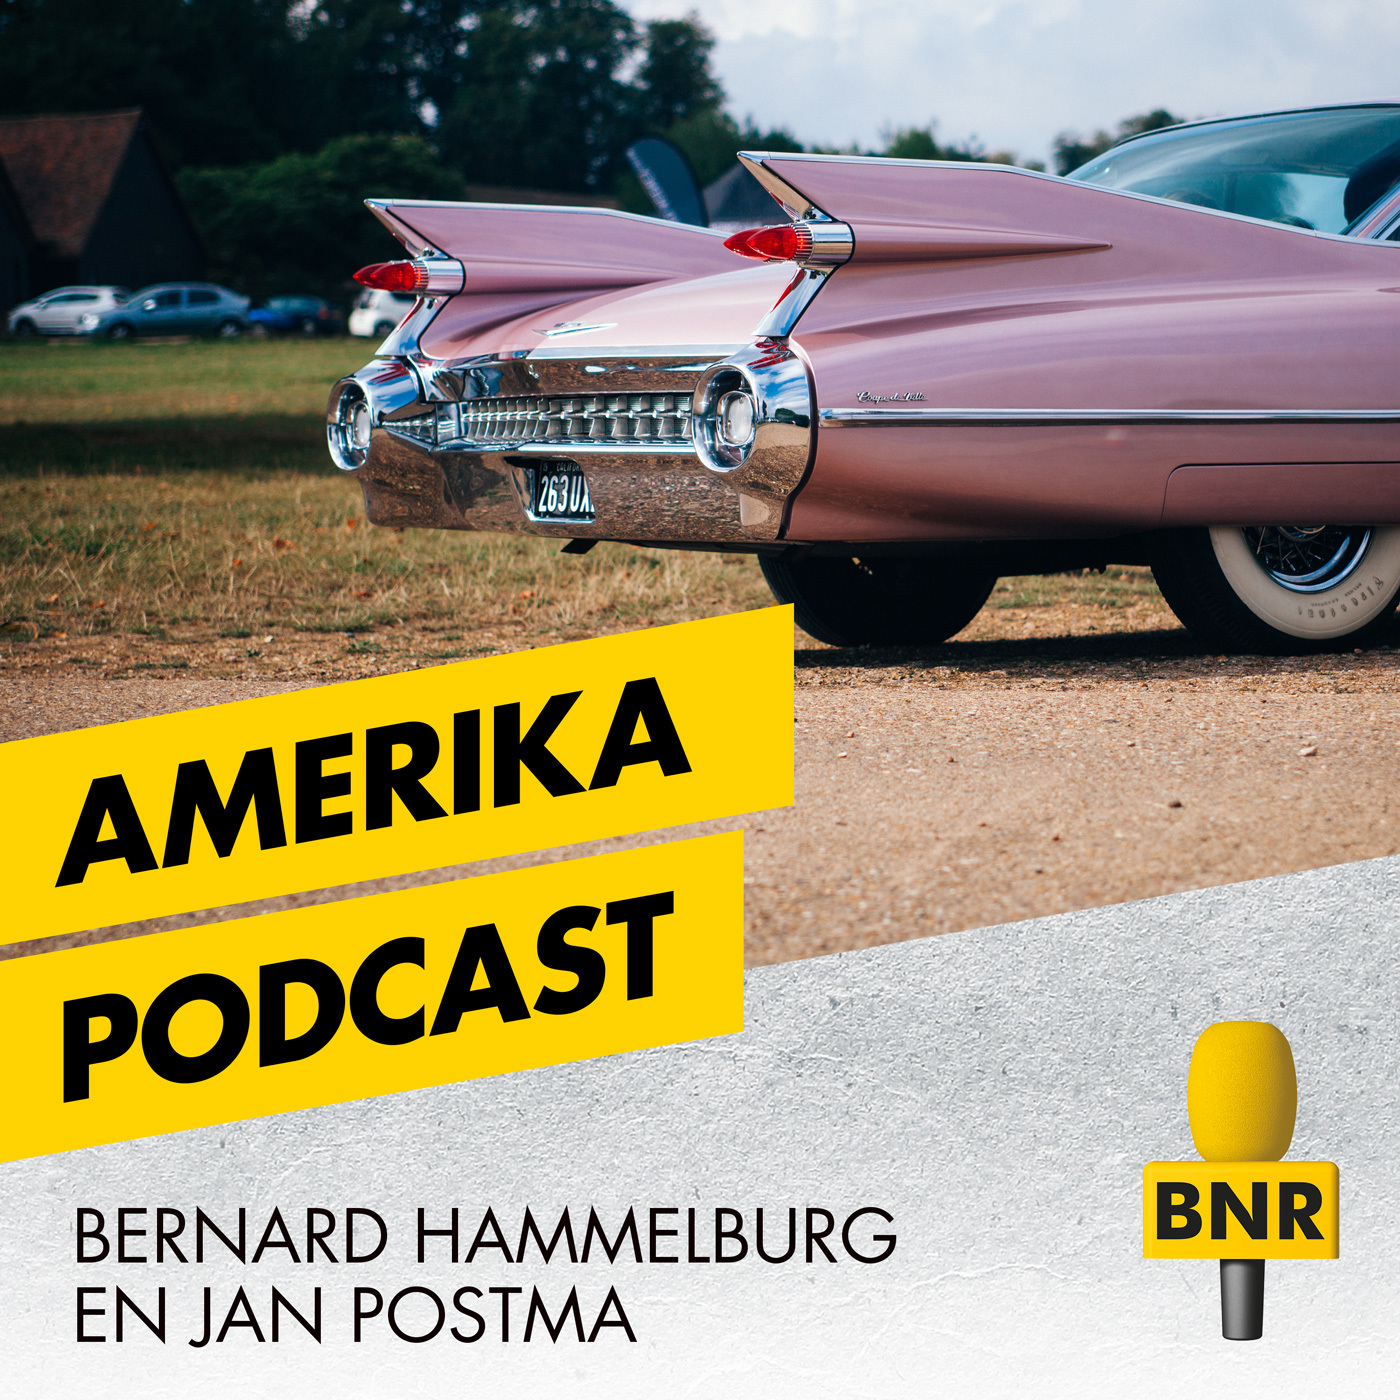 De Amerika Podcast is een tweewekelijkse serie van journalisten Jan Postma en Bernard Hammelburg.